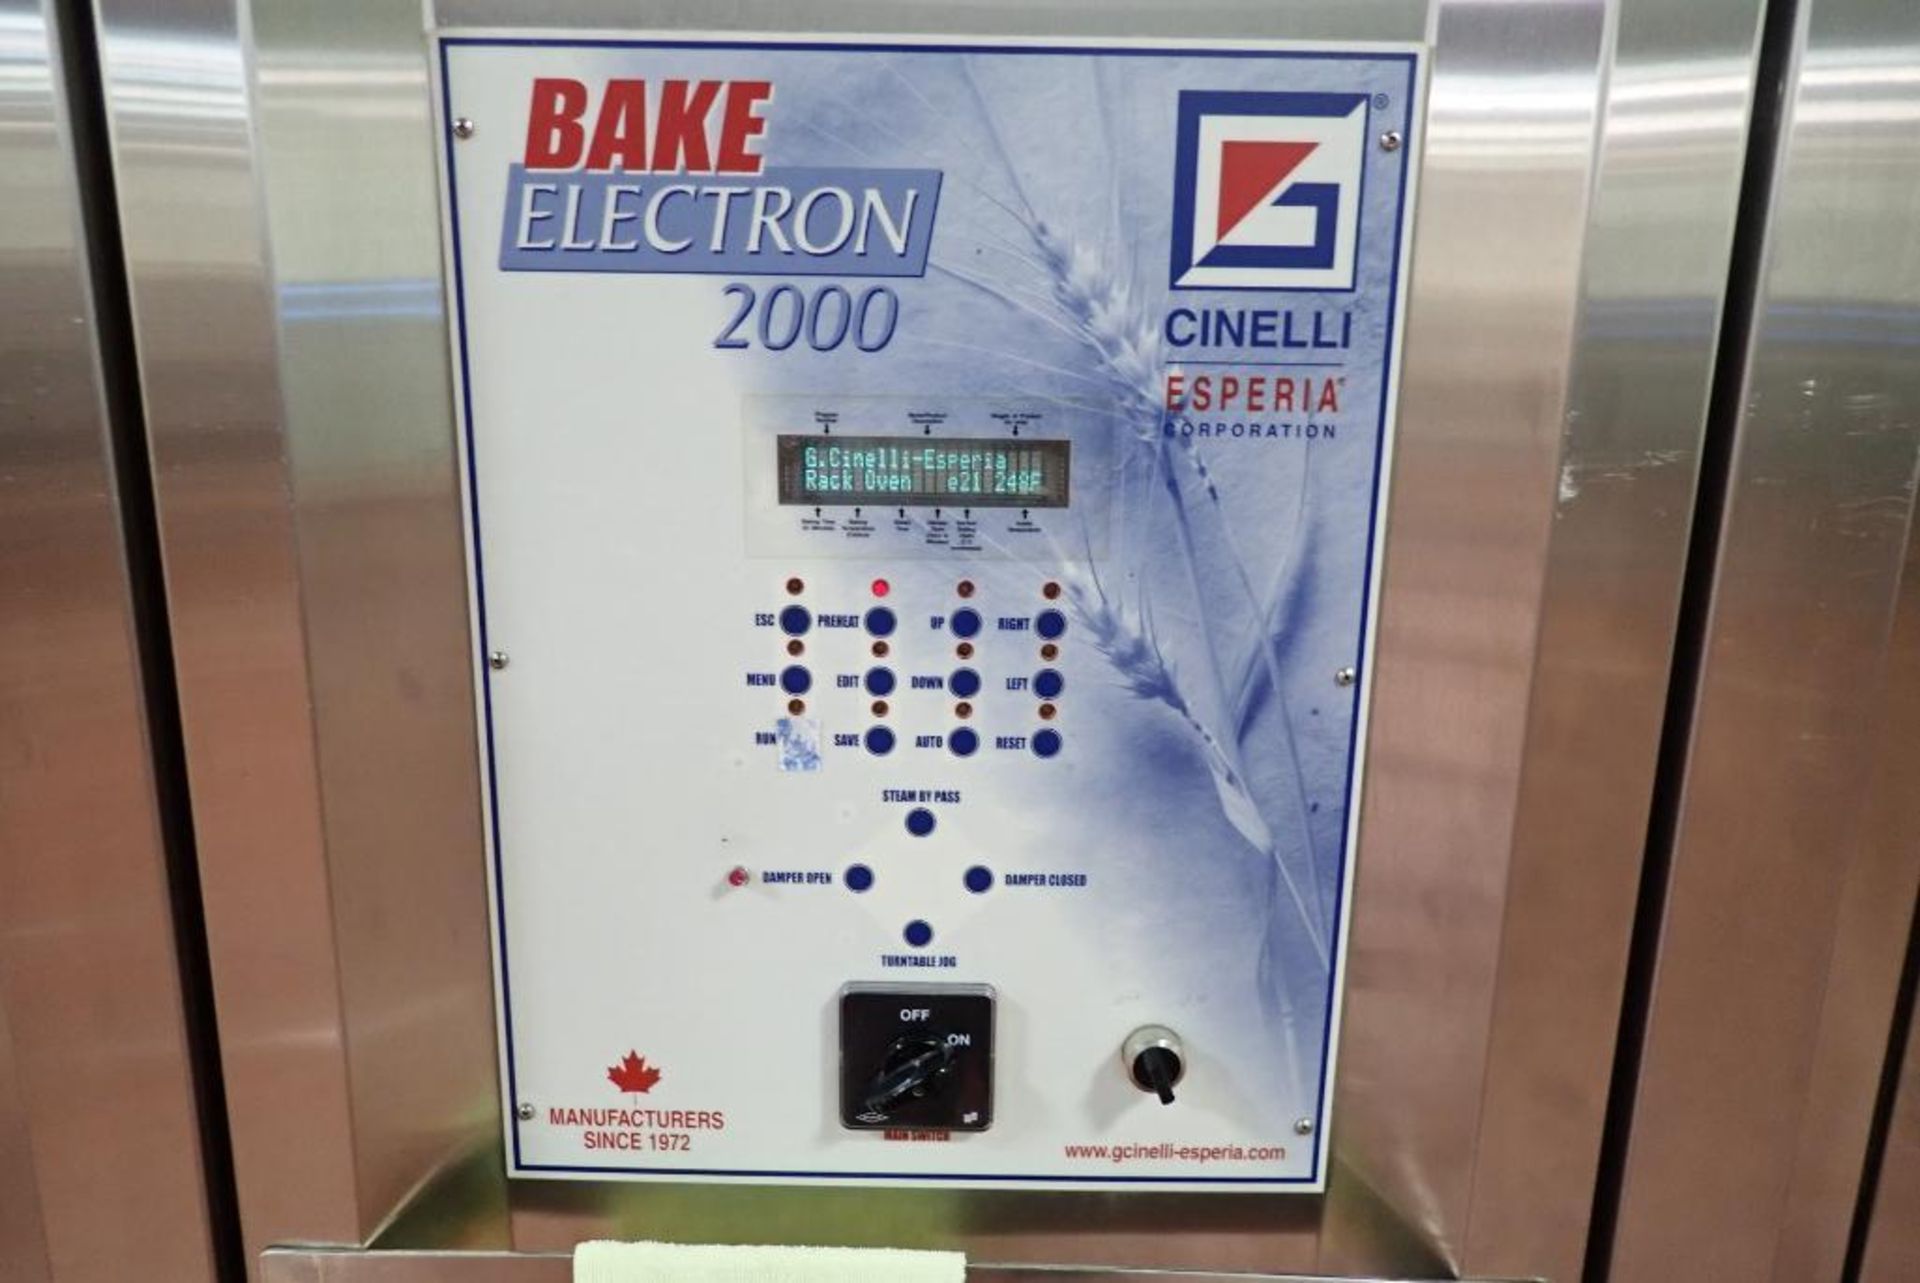 2005 Cinelli Bake Electron 2000 double rack oven - Image 3 of 22